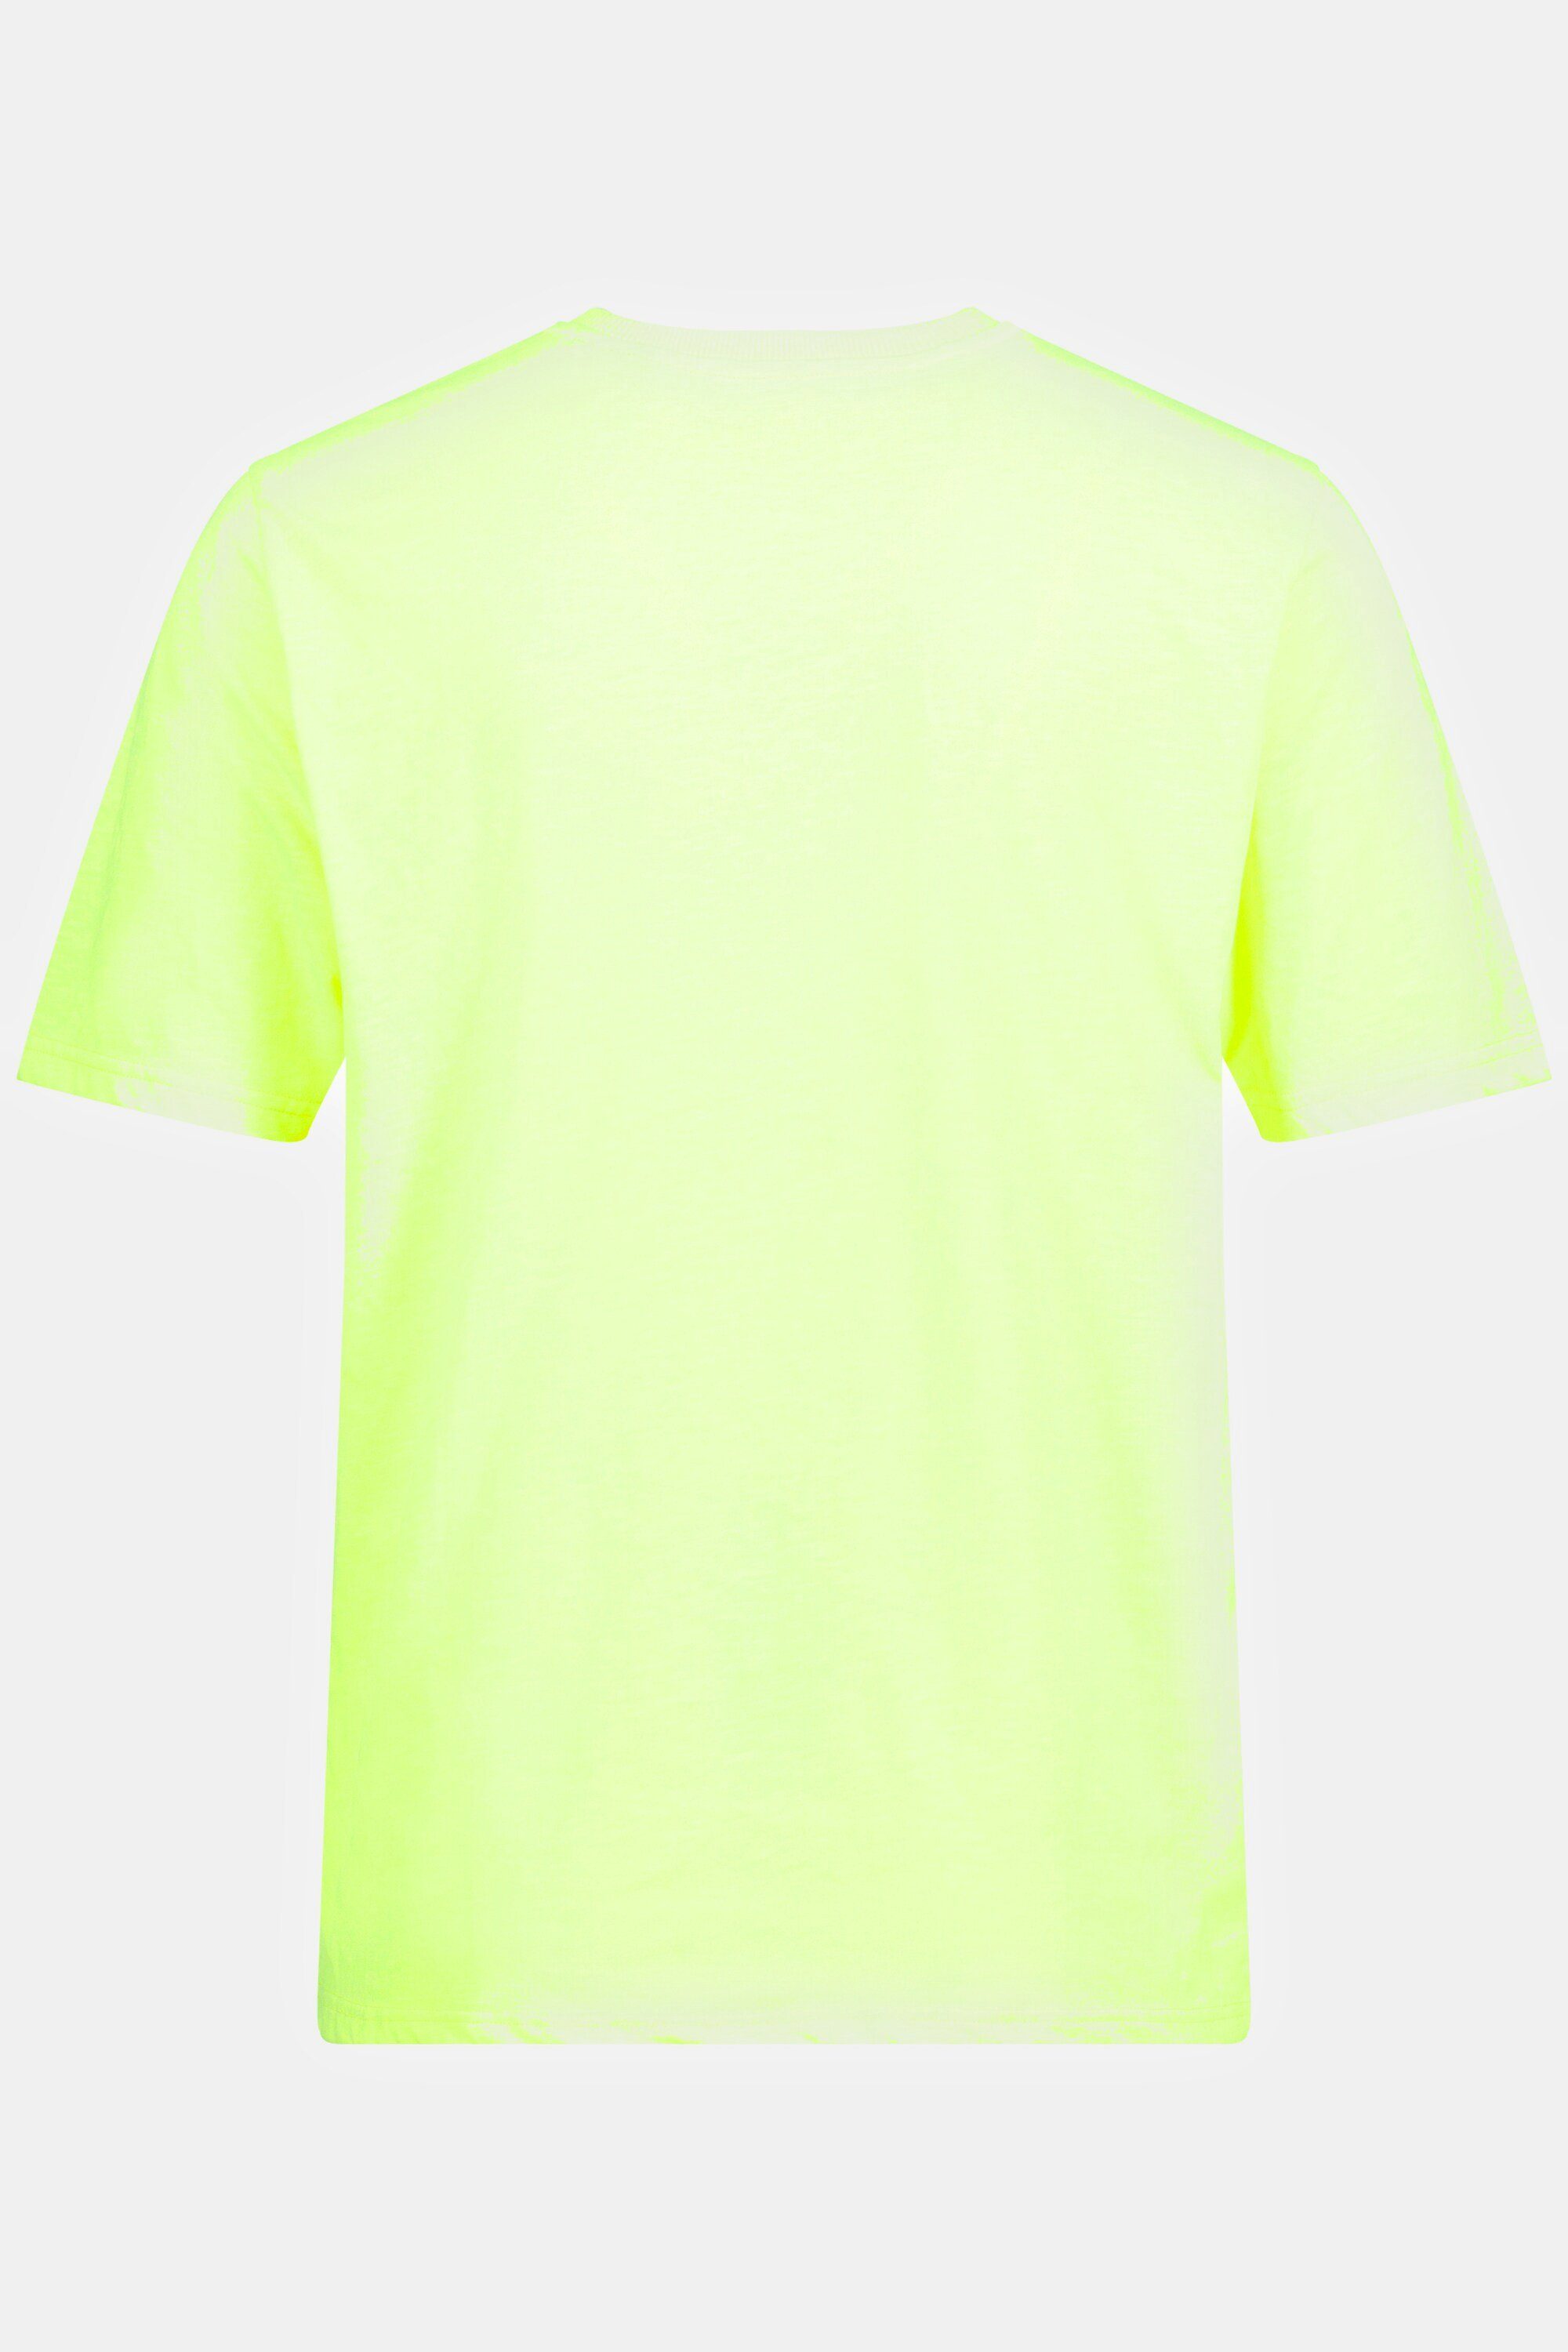 JP1880 T-Shirt T-Shirt Halbarm V-Ausschnitt gelb neon